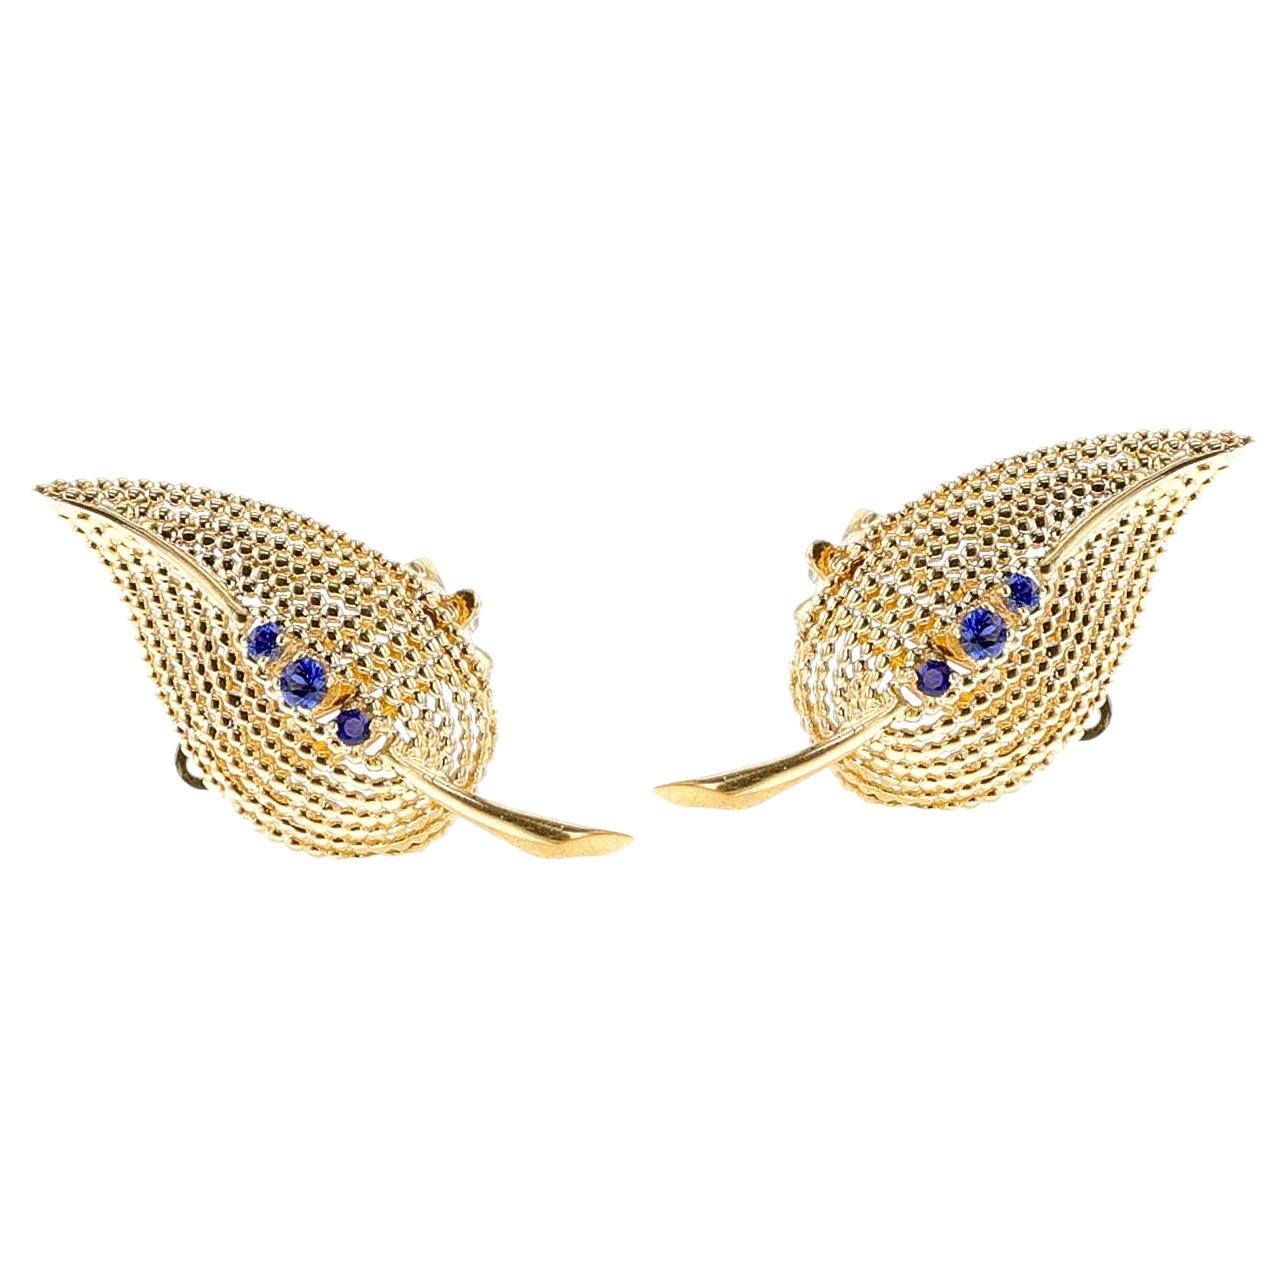 Tiffany & Co. Sapphire Leaf Earrings, 18k